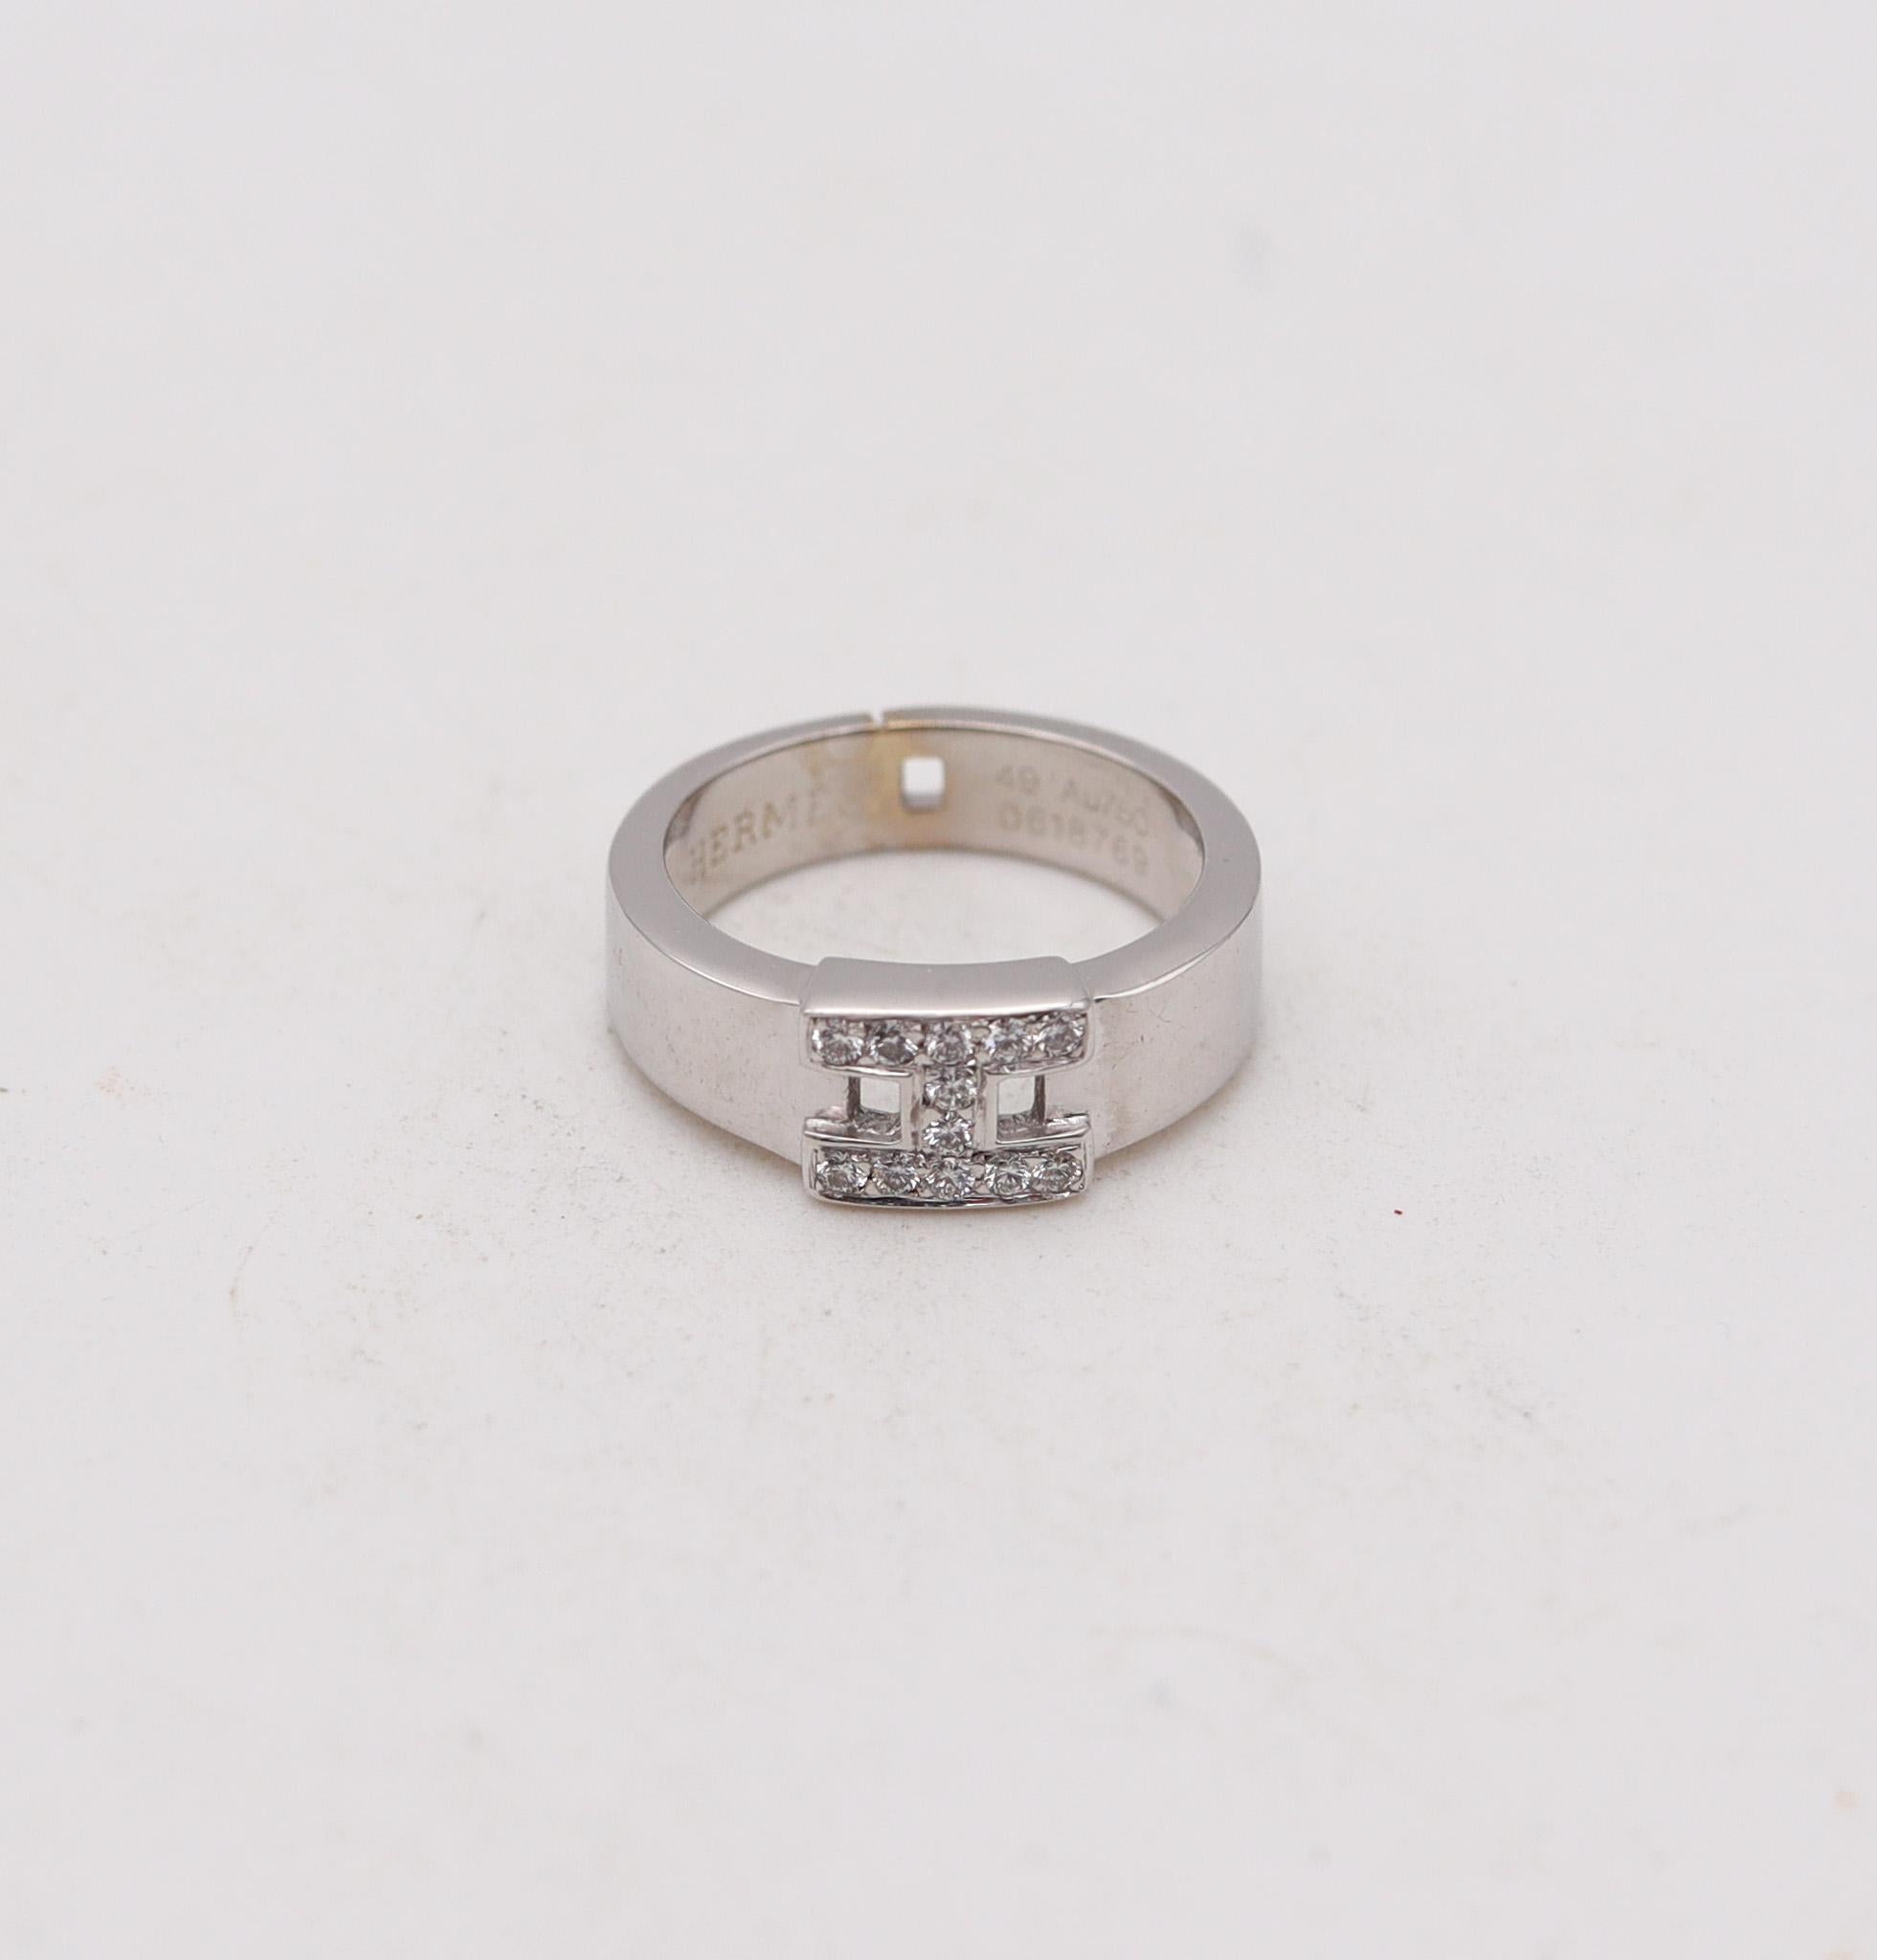 Ring H, entworfen von Hermes.

Dies ist der ikonische H-Ring, der in Paris, Frankreich, vom Haus Hermes geschaffen wurde. Dieser Ring wurde aus massivem 18-karätigem Weißgold mit hochglanzpolierter Oberfläche gefertigt. Das ikonische H in der